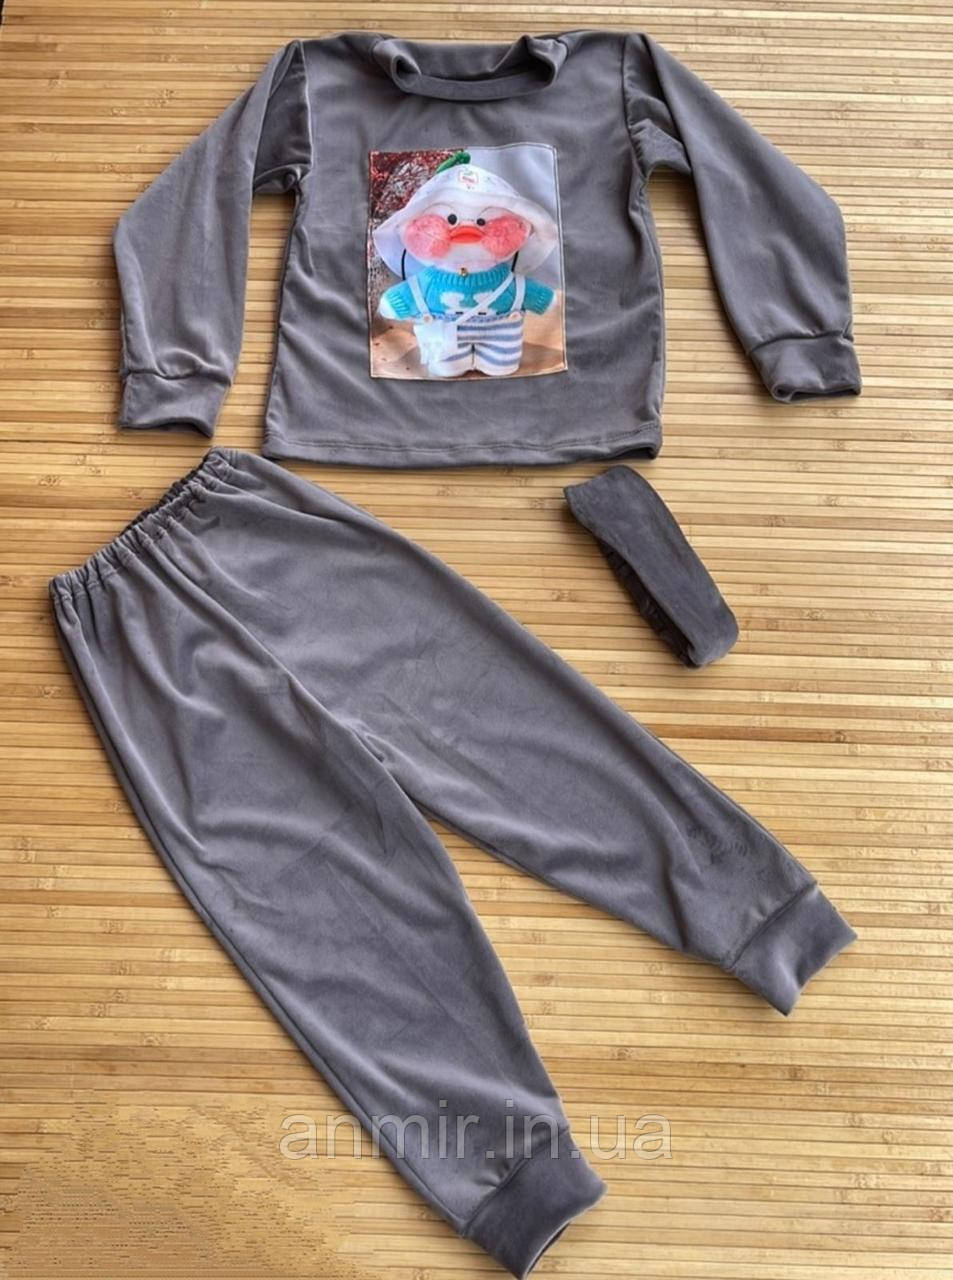 Спортивний костюм дитячий велюровий УТК для дівчинки 4-7 років, колір уточнюйте під час замовлення